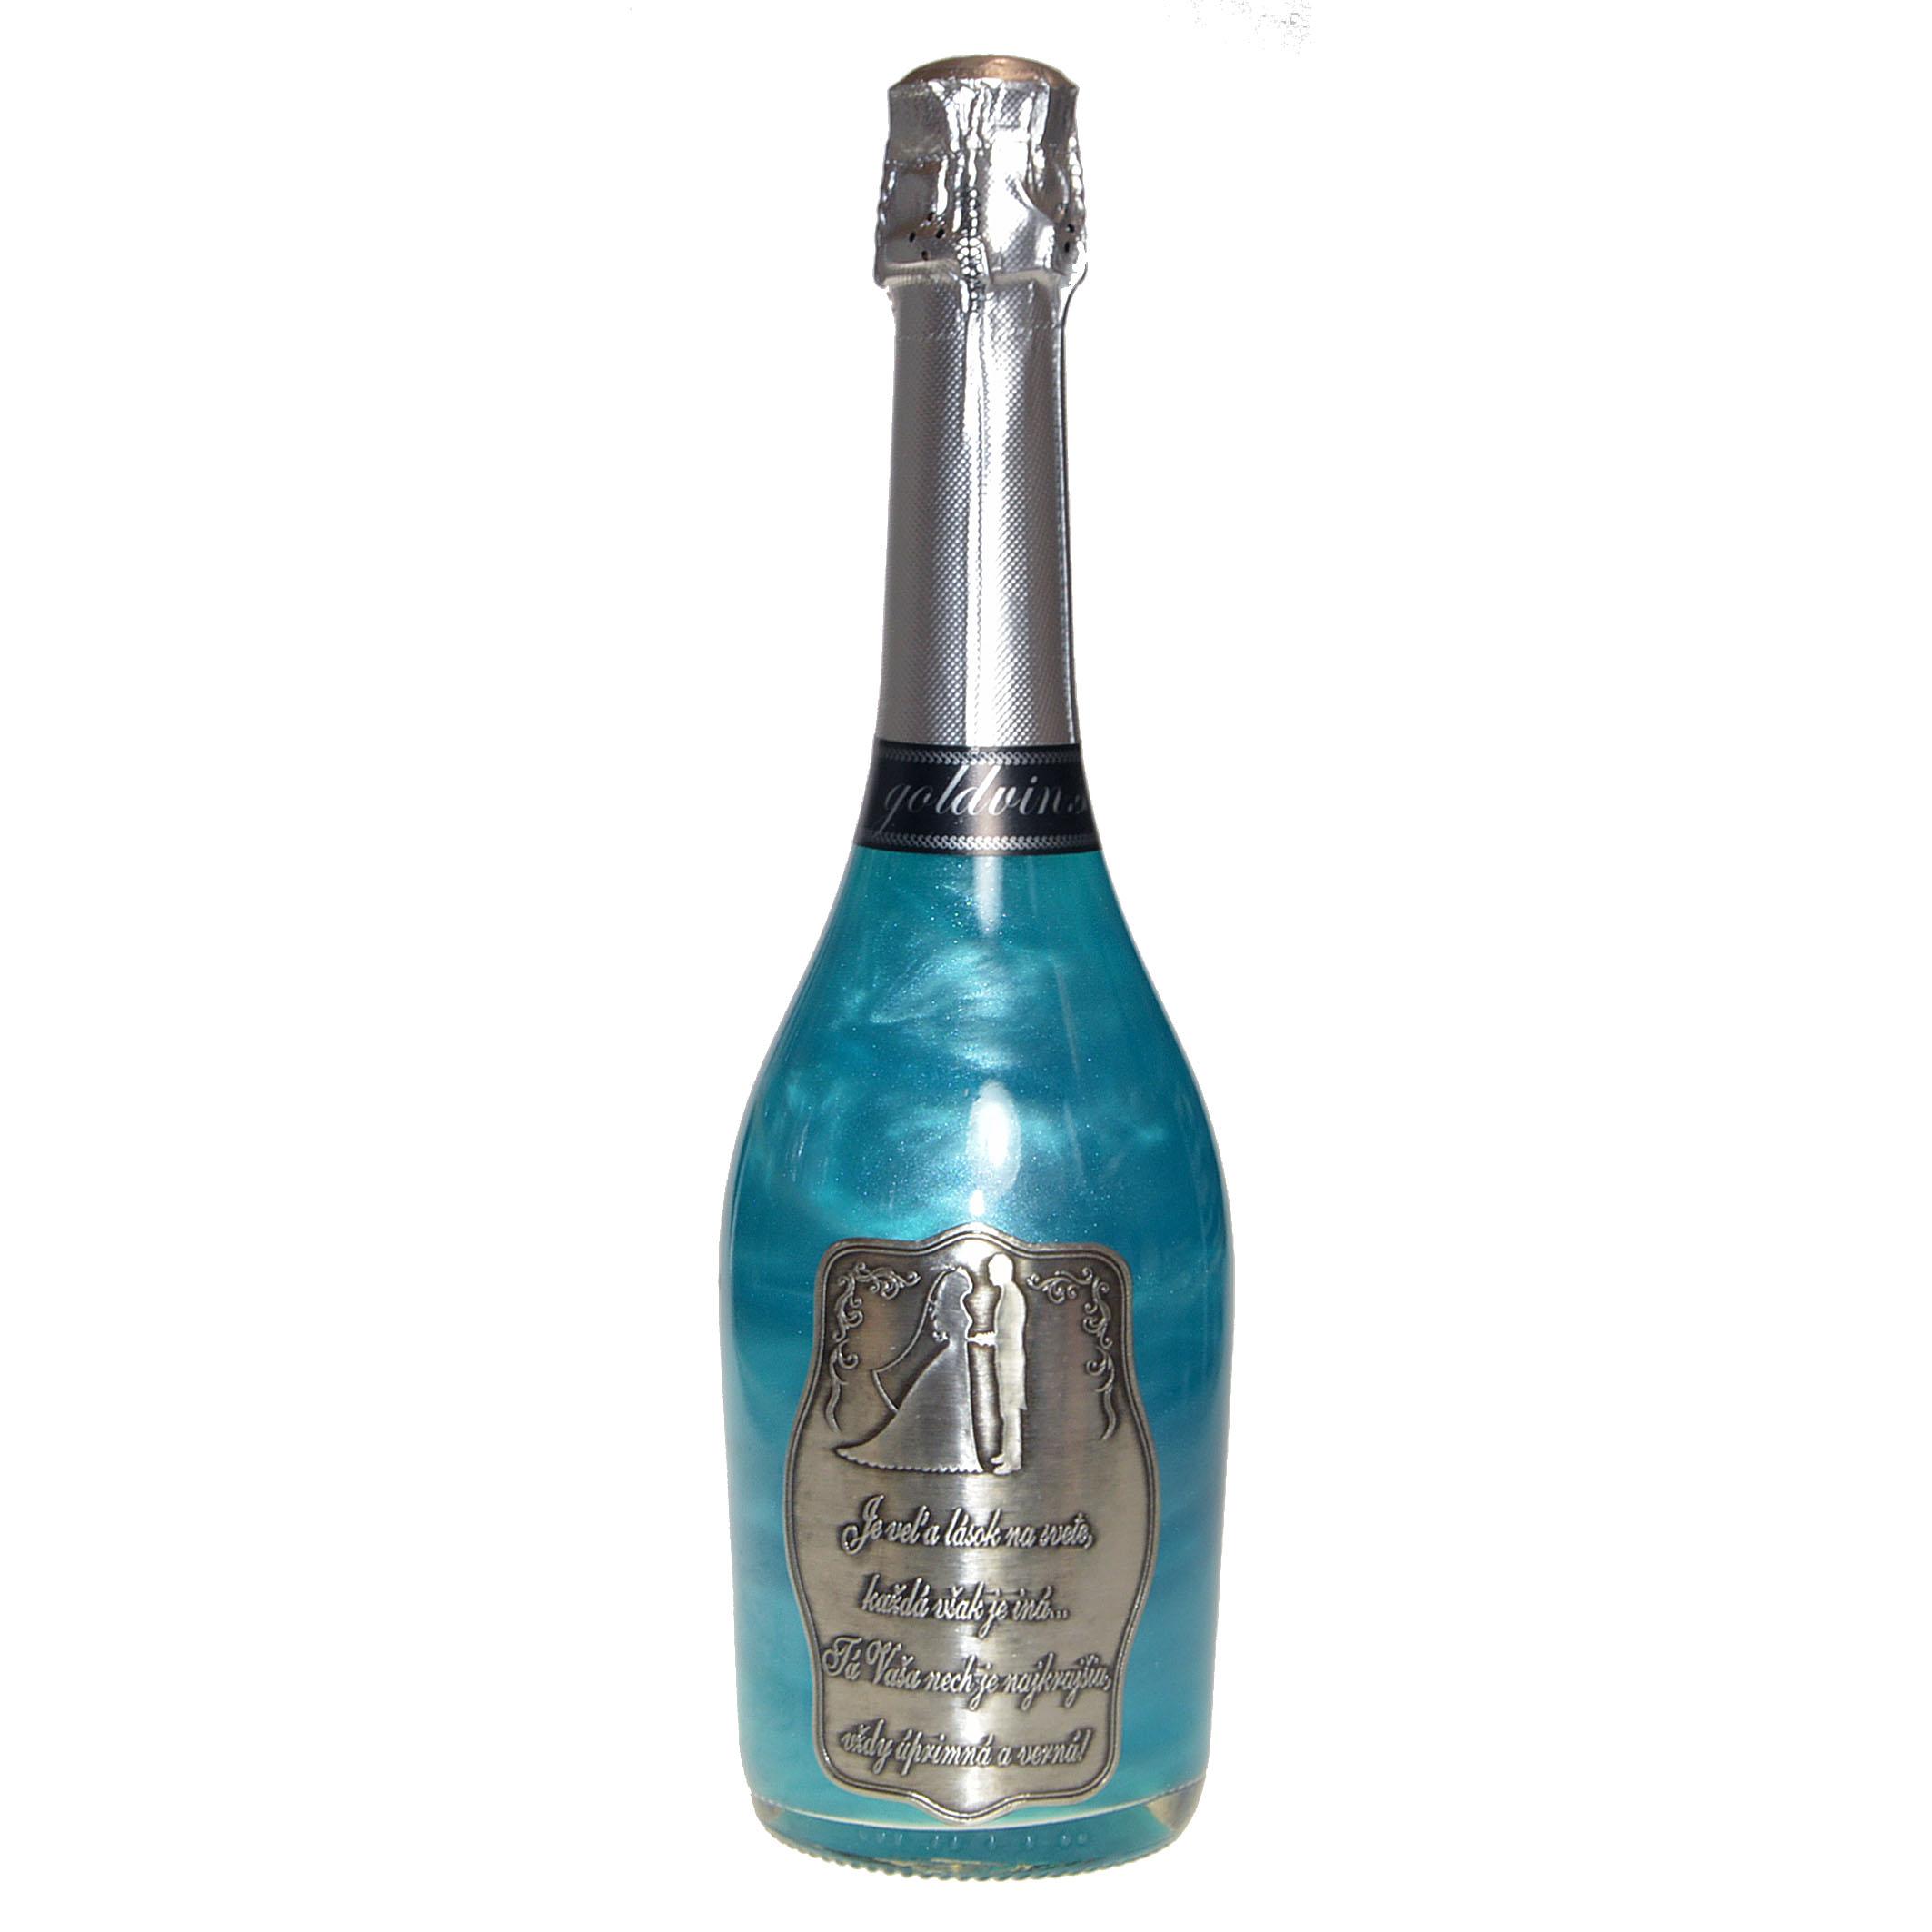 Perlové šampanské GHOST modré - Svadobné